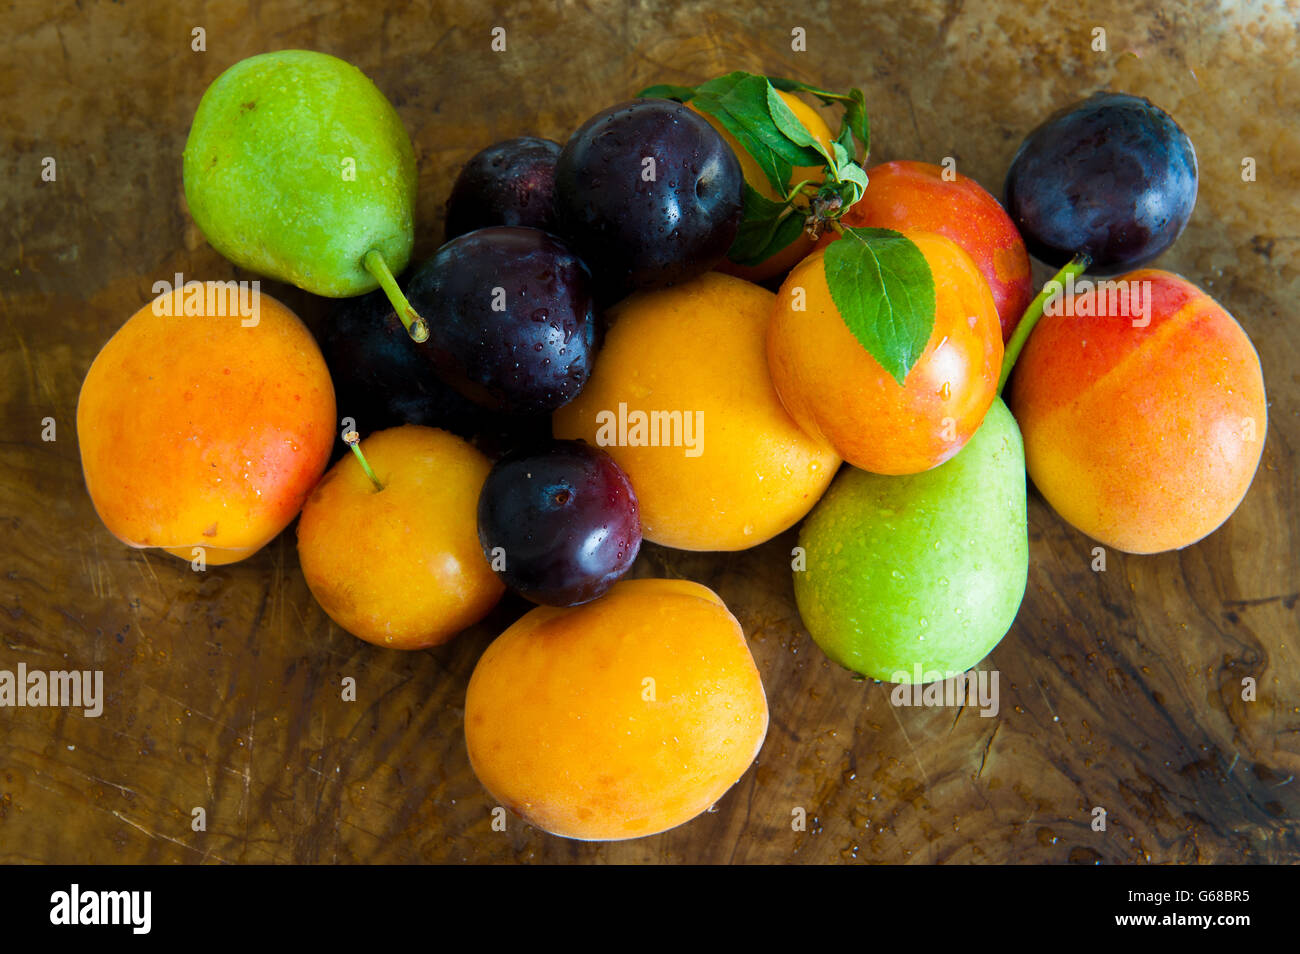 Haufen von Pflaume, Aprikose, Birne, bunte frische Saisonfrüchte auf hölzernen baclground Stockfoto